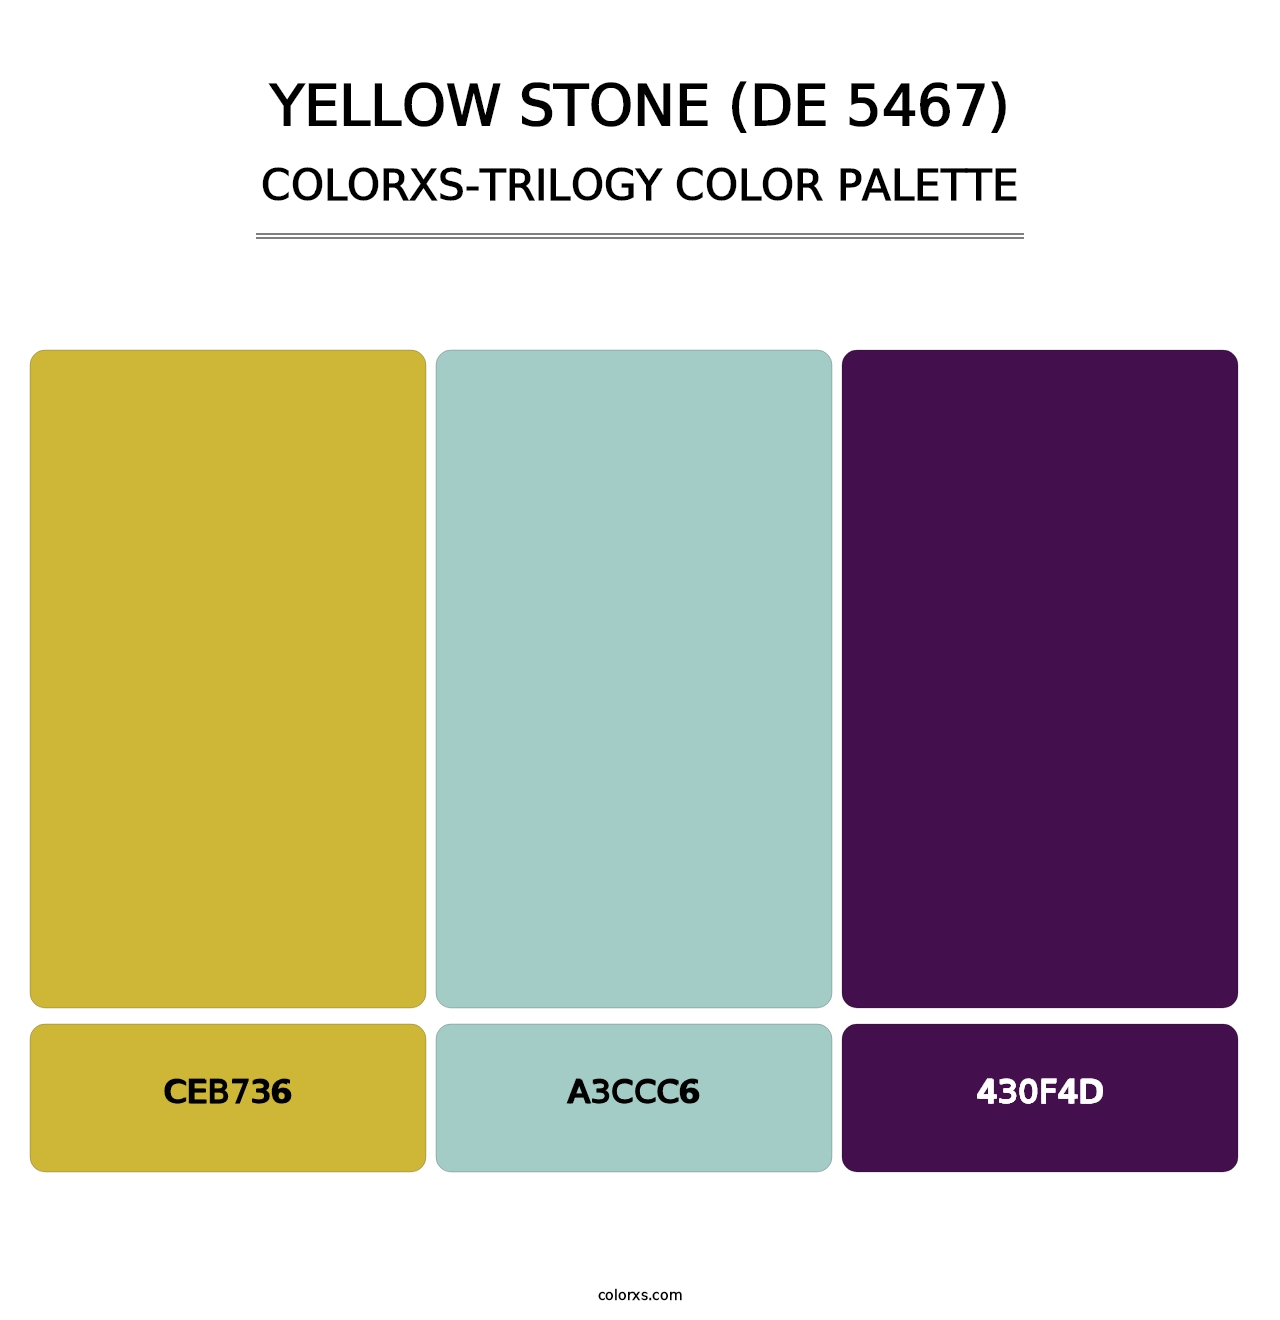 Yellow Stone (DE 5467) - Colorxs Trilogy Palette